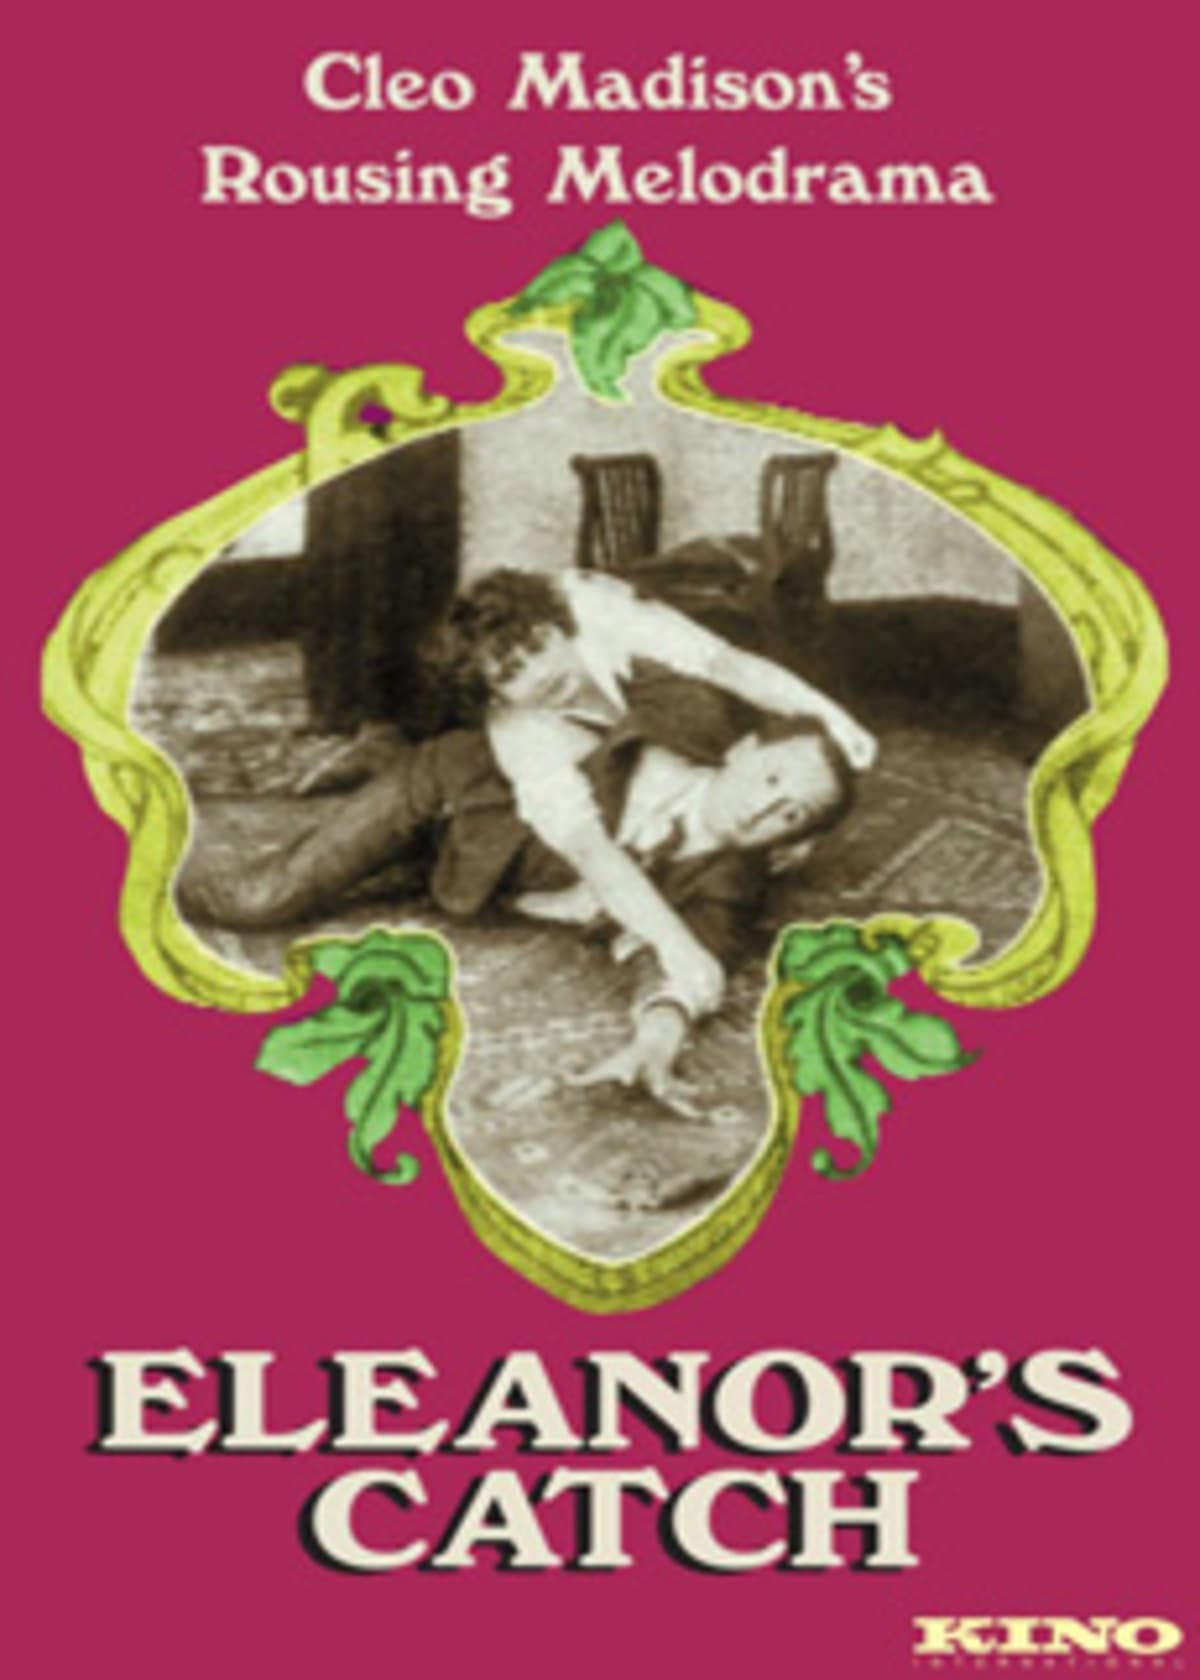 Eleanor's Catch (1916)